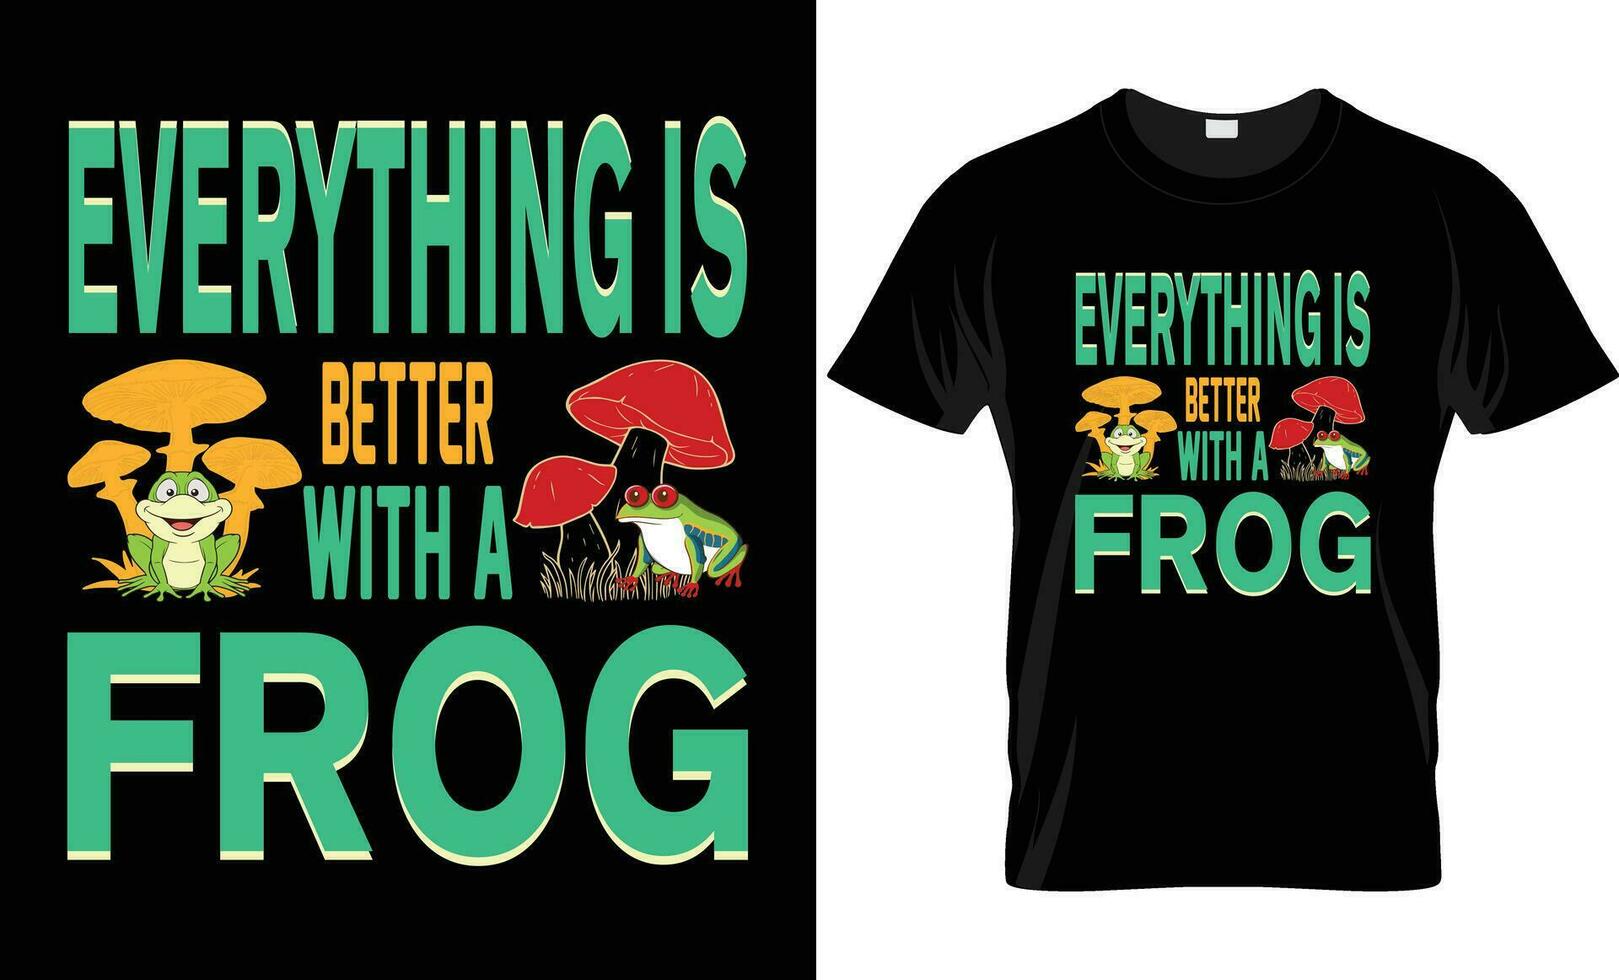 frog t shirt design. unique t shirt design. Typography t shirt design. Funny frog t shirt. vector